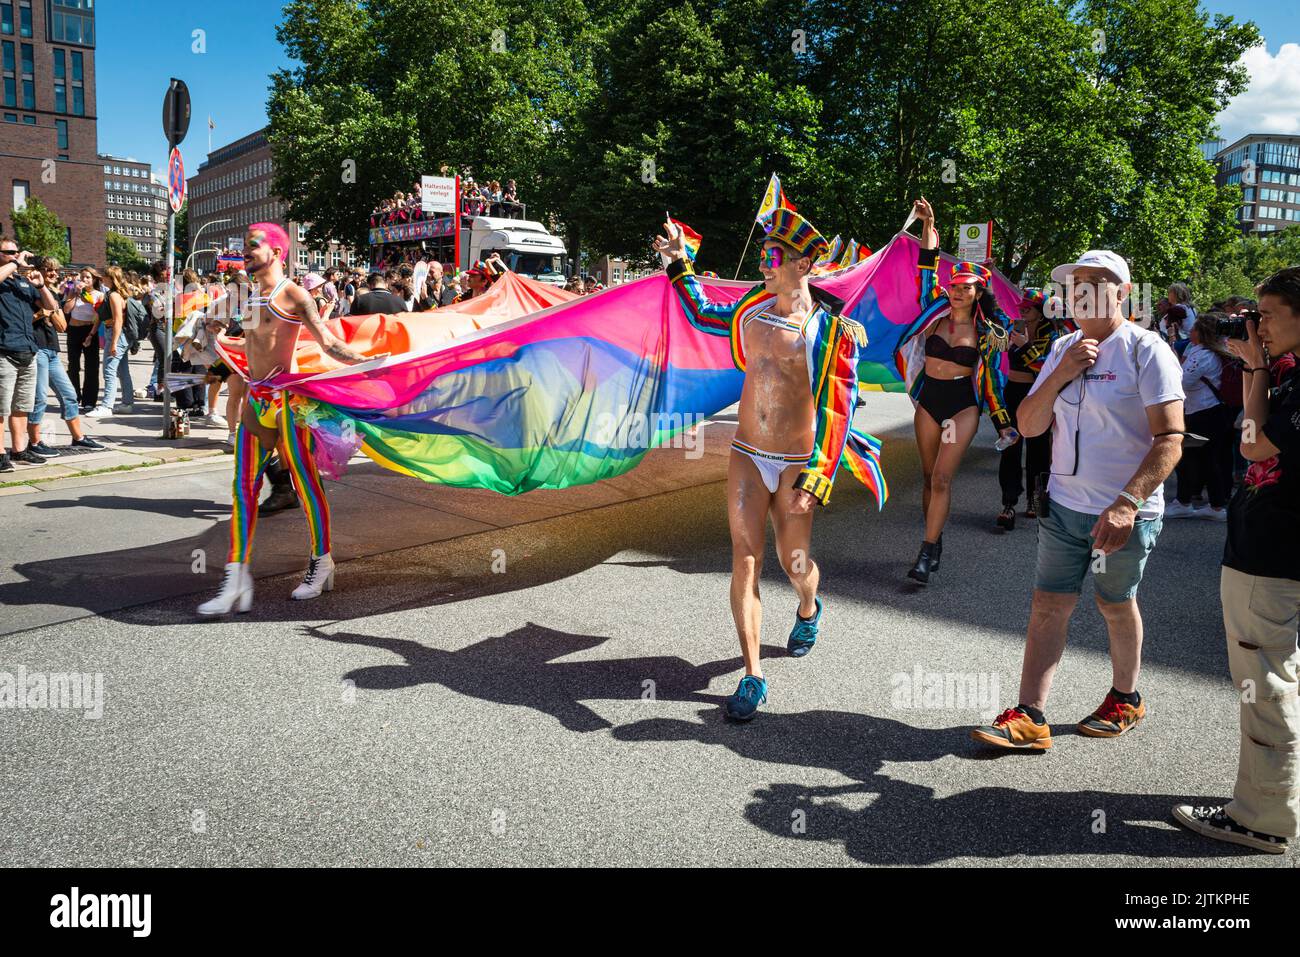 Los participantes coloridos, extravagantes y escasamente vestidos del Desfile CSD de Christopher Street Day en Hamburgo llevan una bandera de arco iris, Alemania Foto de stock